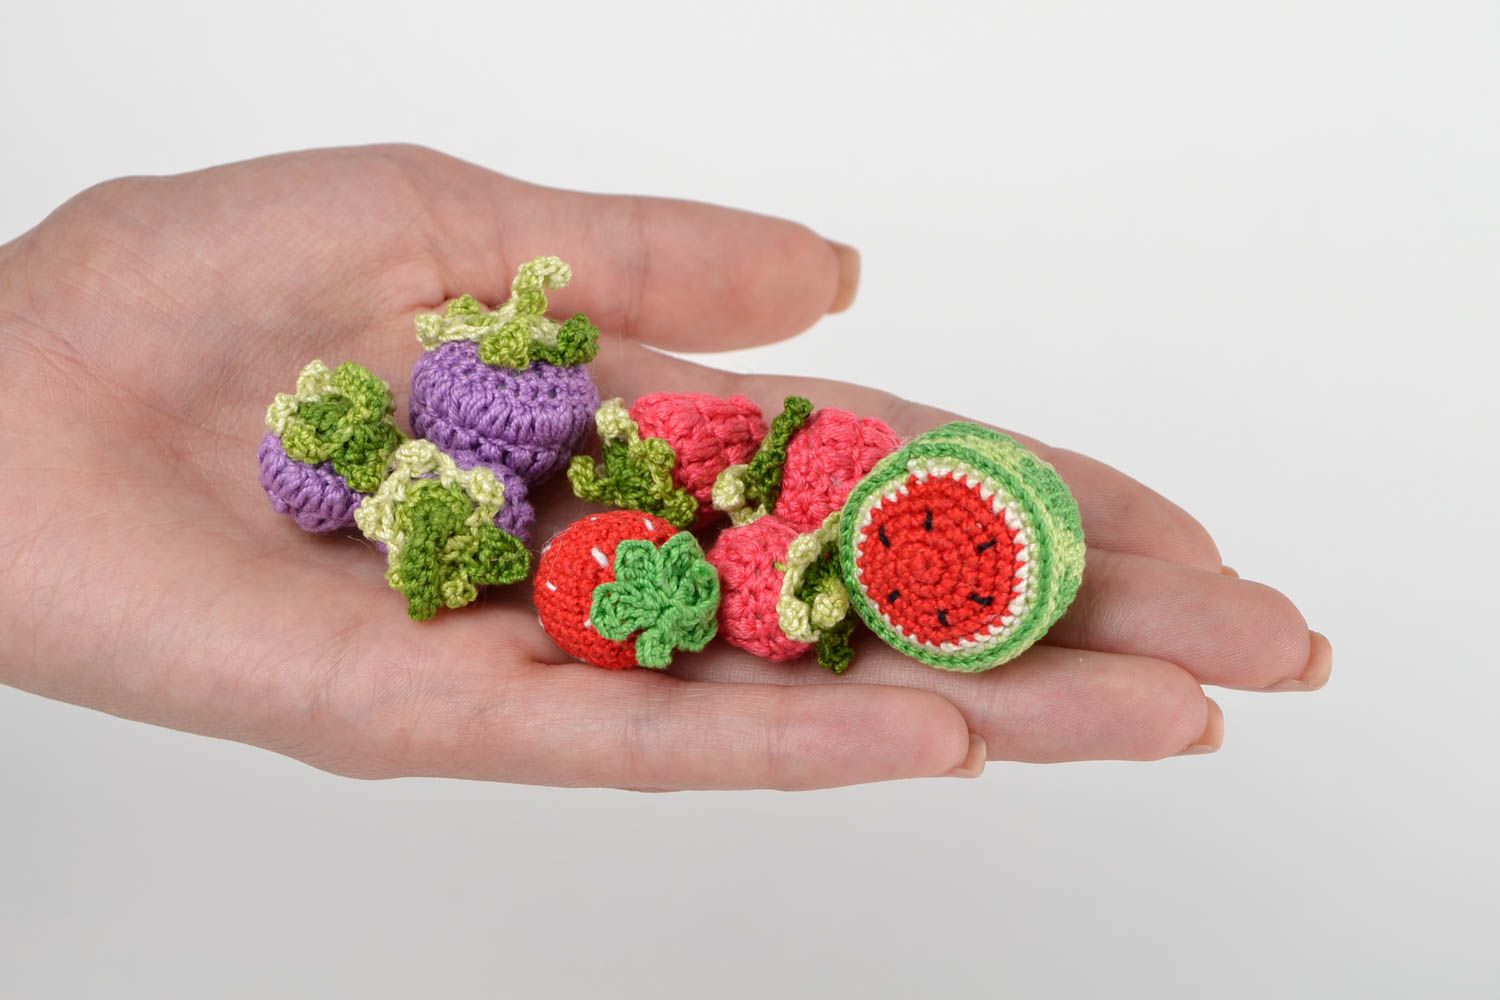 Frutas tejidas a crochet verios tipos juguetes artesanales regalos originales  foto 2